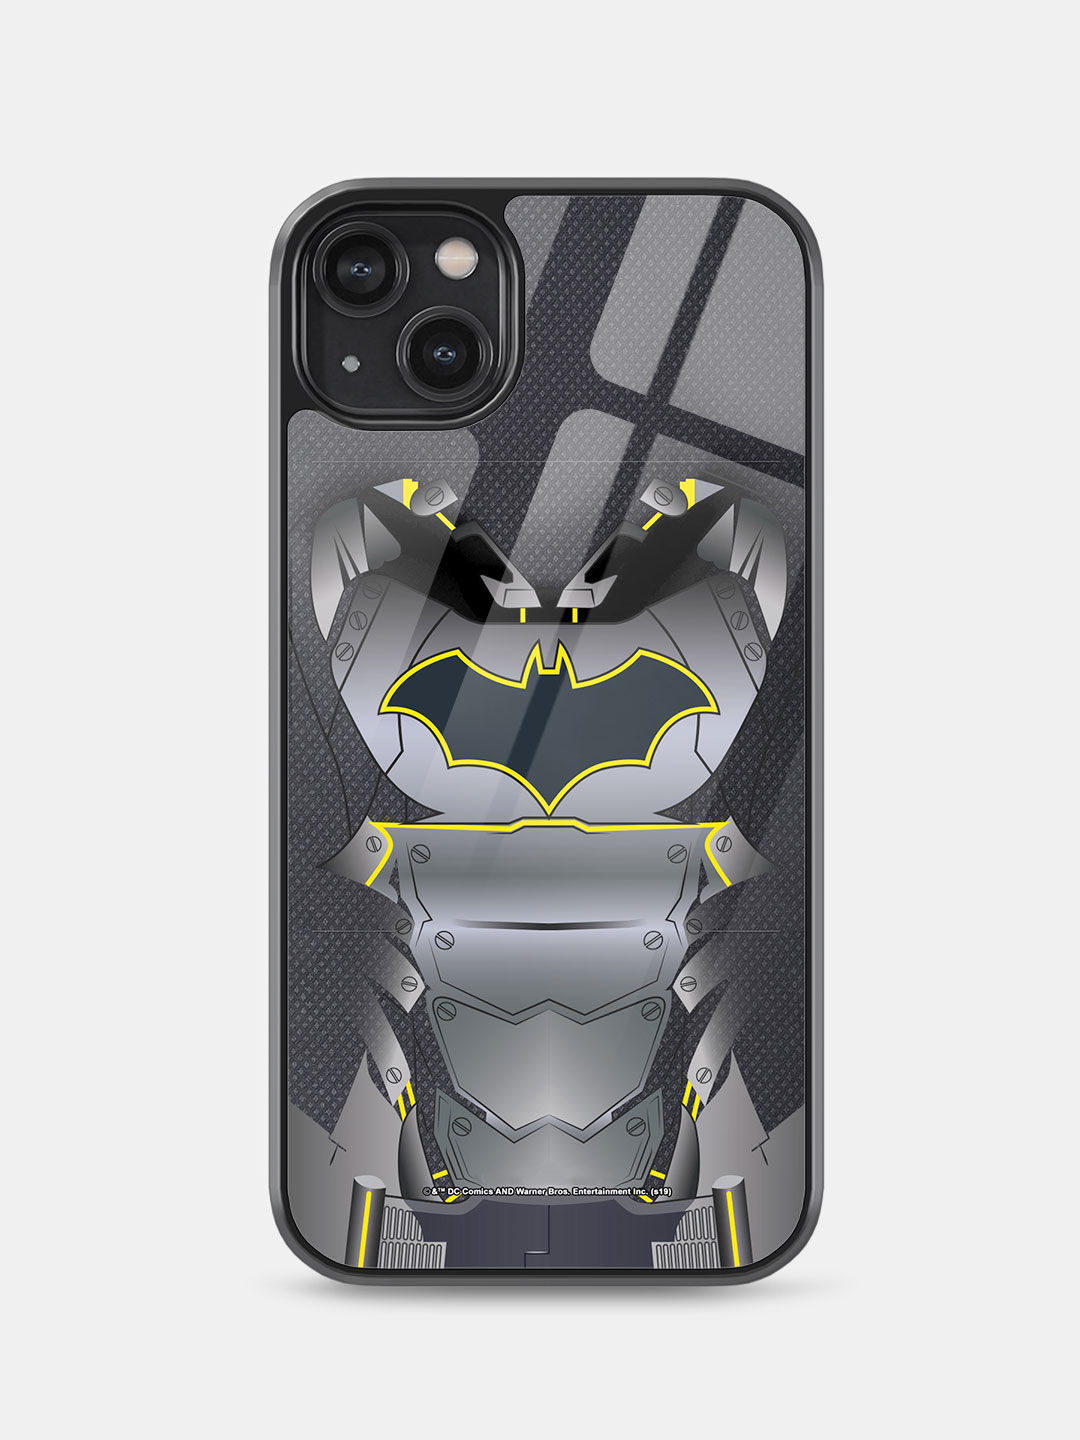 Buy Suit up Batman Macmerise Glass Case for iPhone 11 Pro Max Online